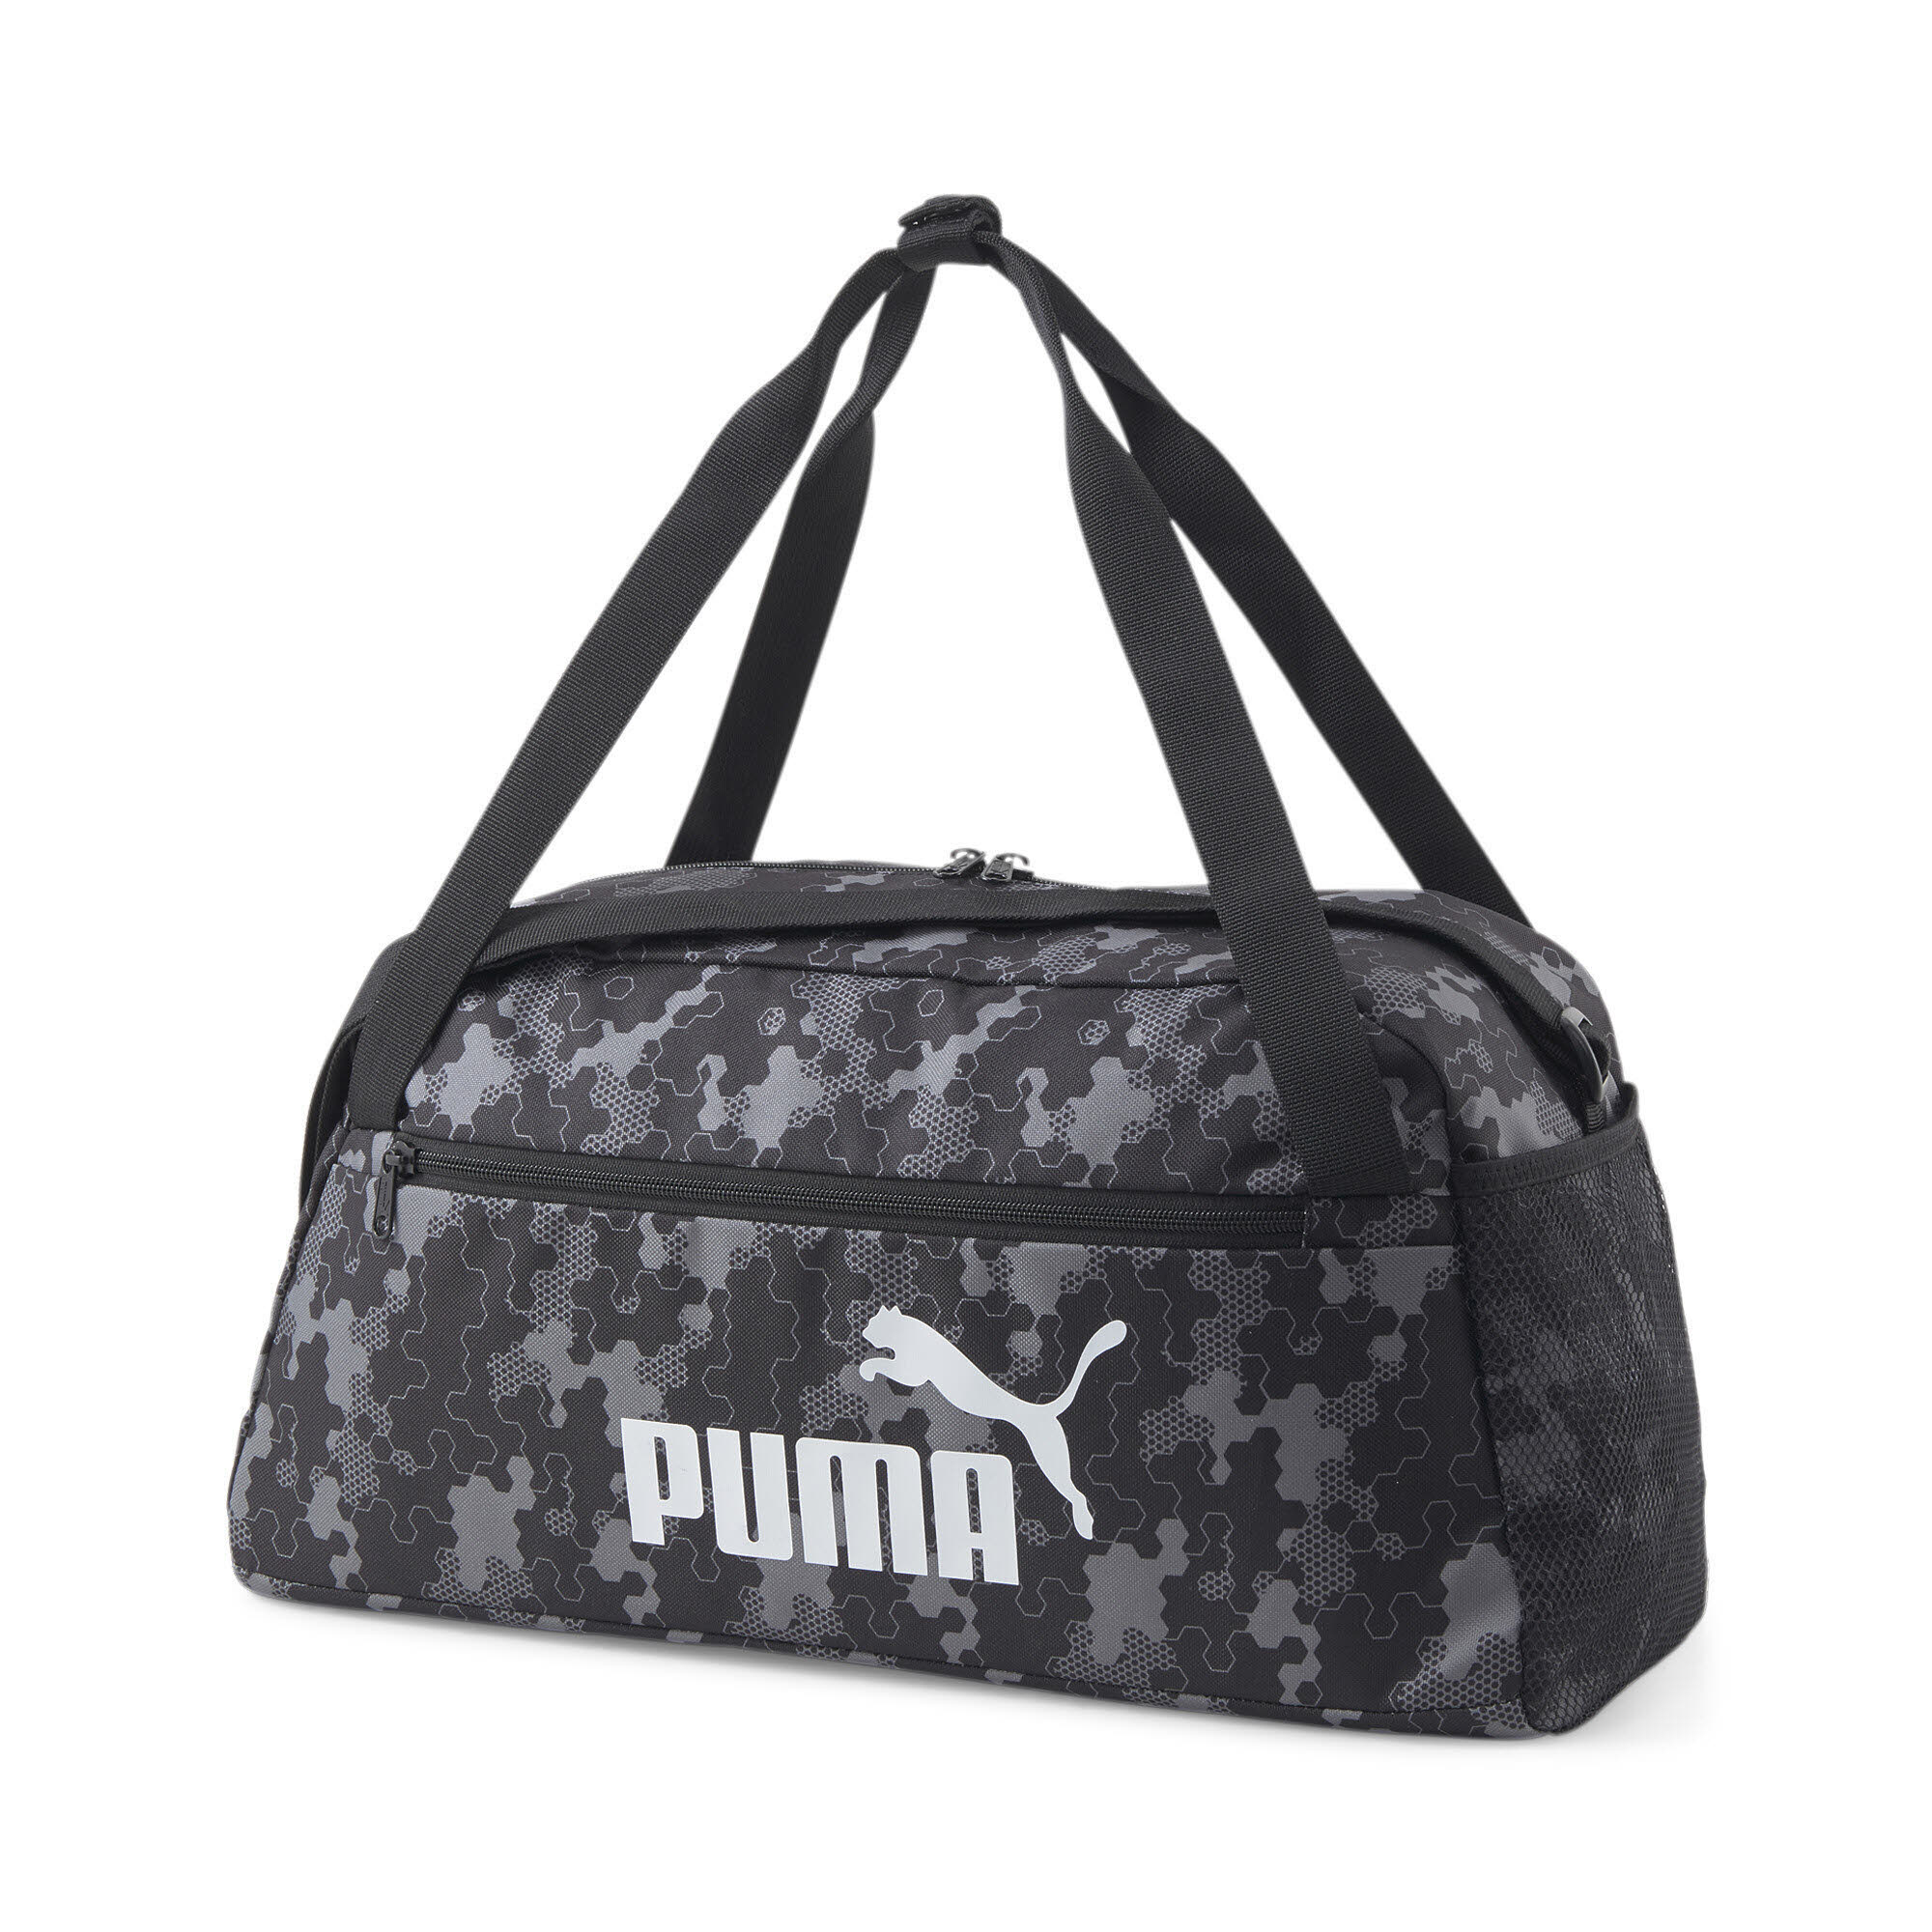 Puma Phase AOP Sports Bag Sporttasche Trainingstasche schwarz grau